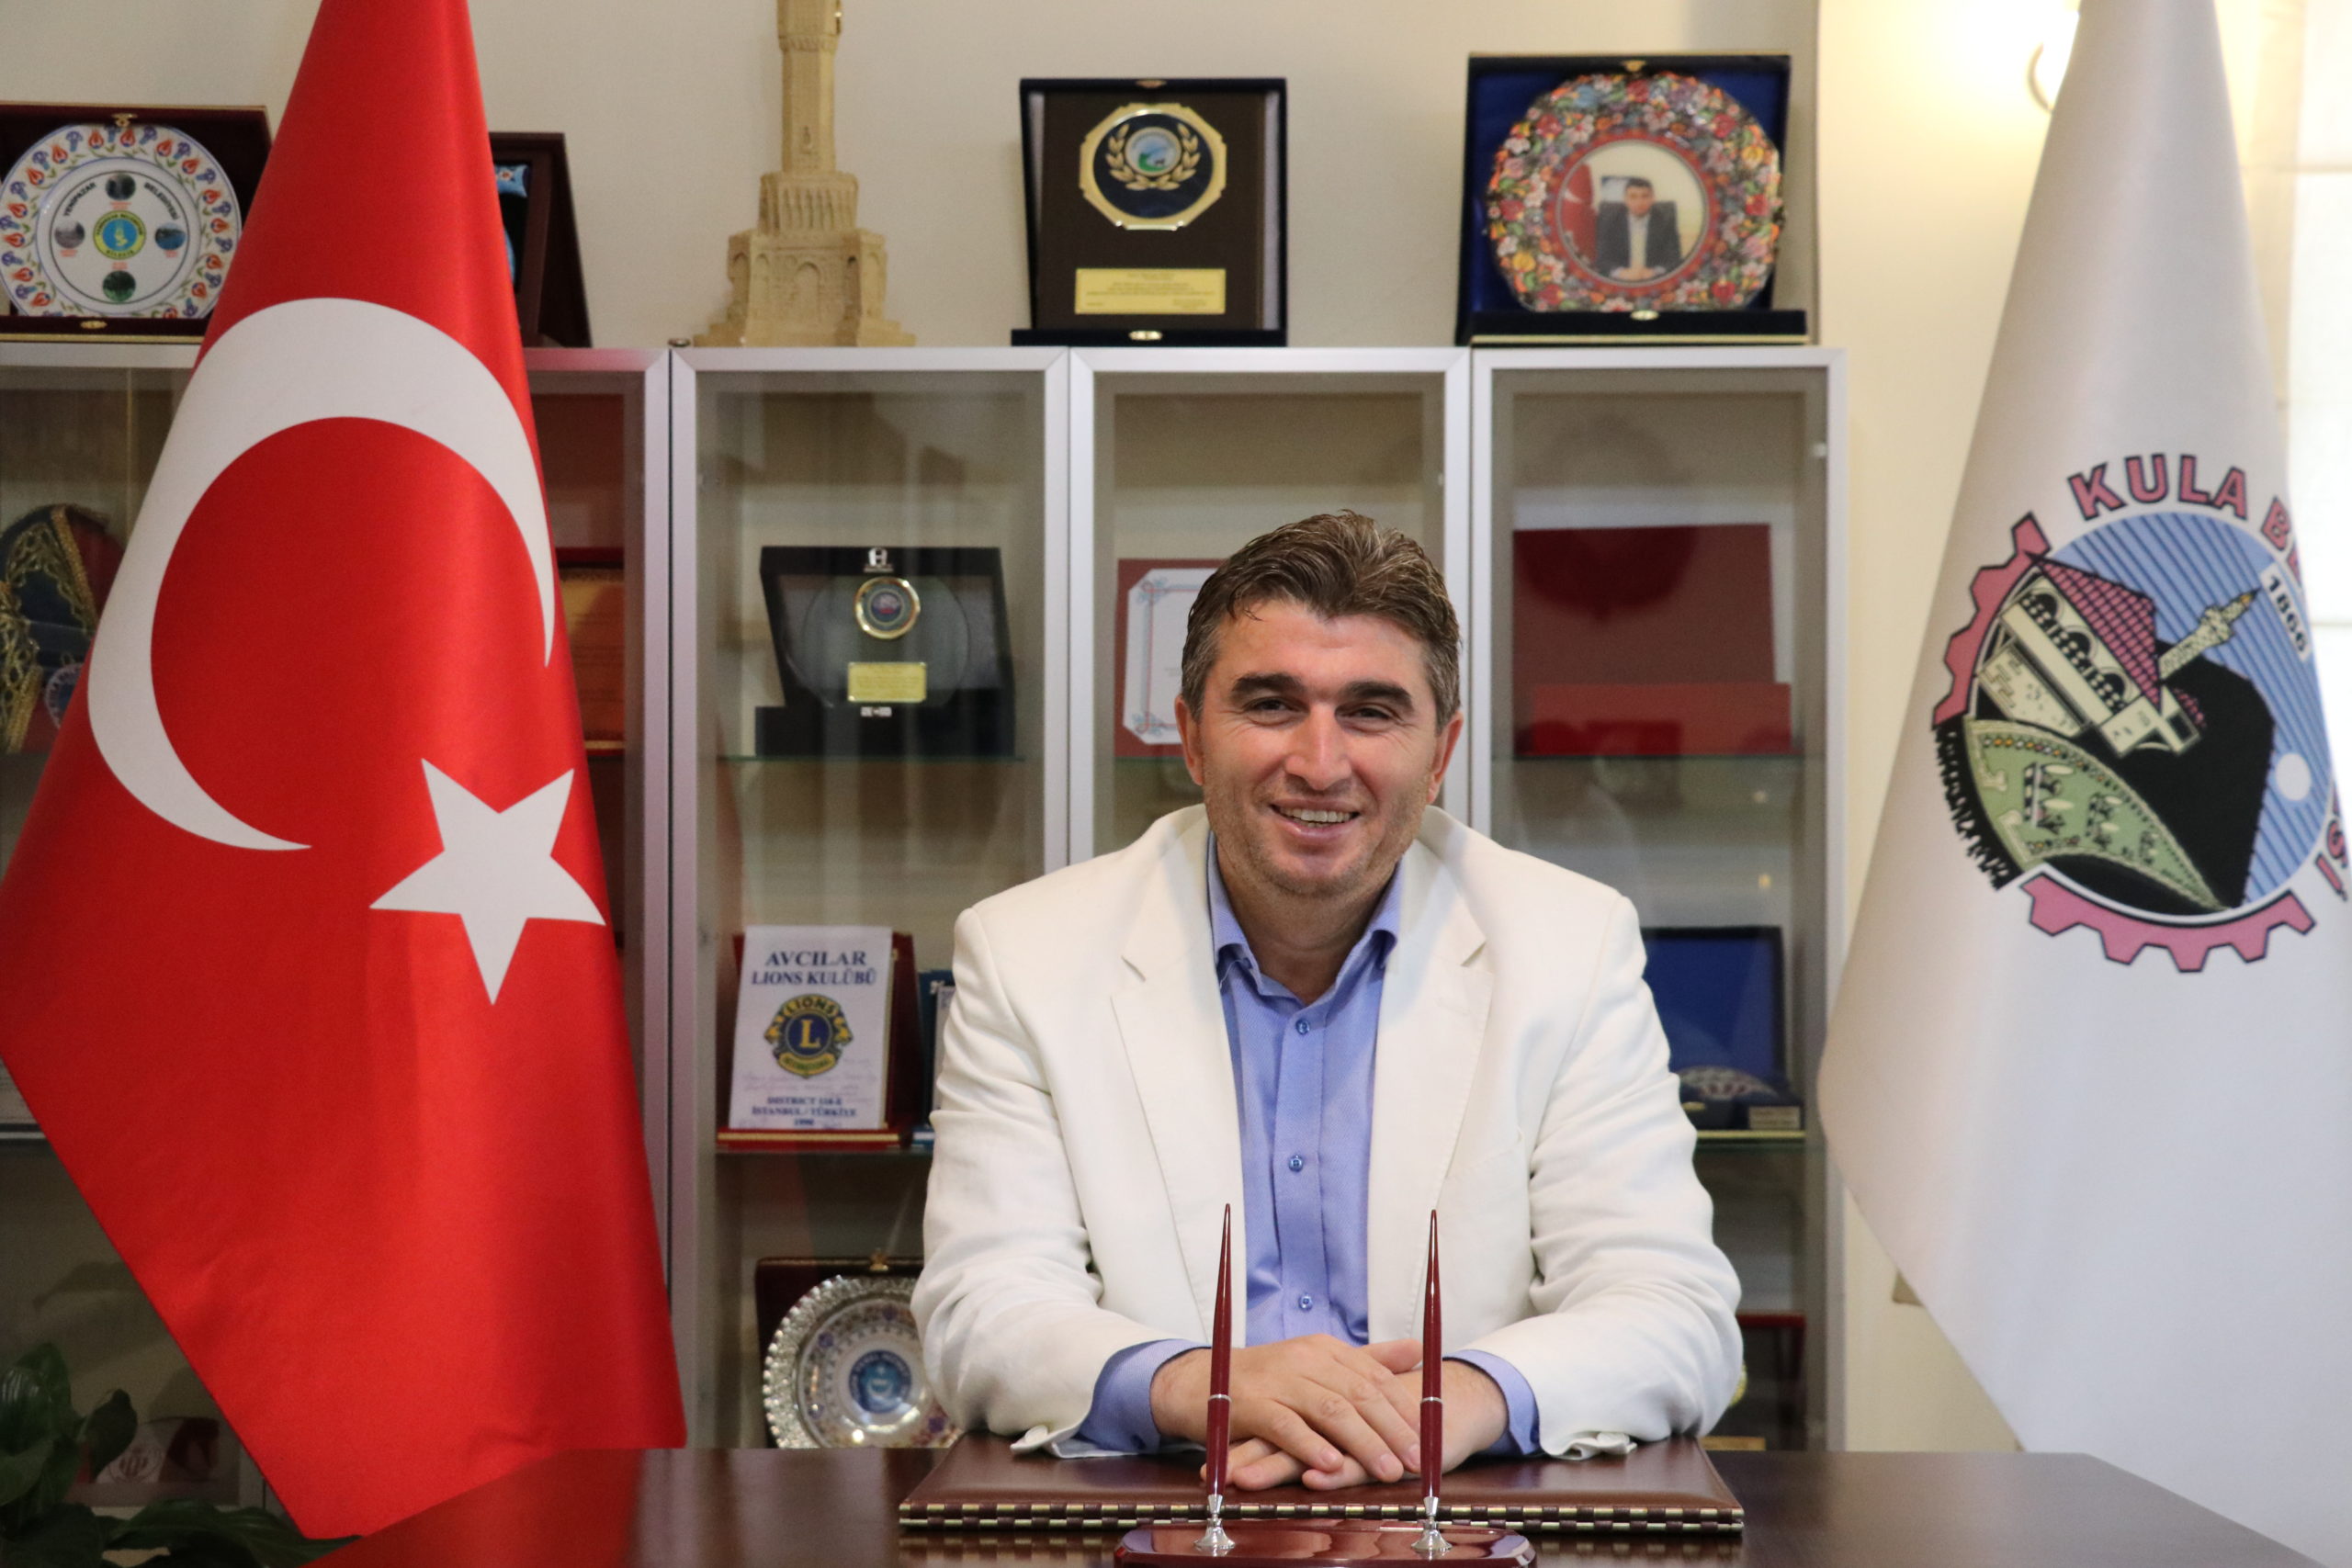  Kula Belediye Başkanı Tosun, Kadir Gecesi Mesajı Yayımladı